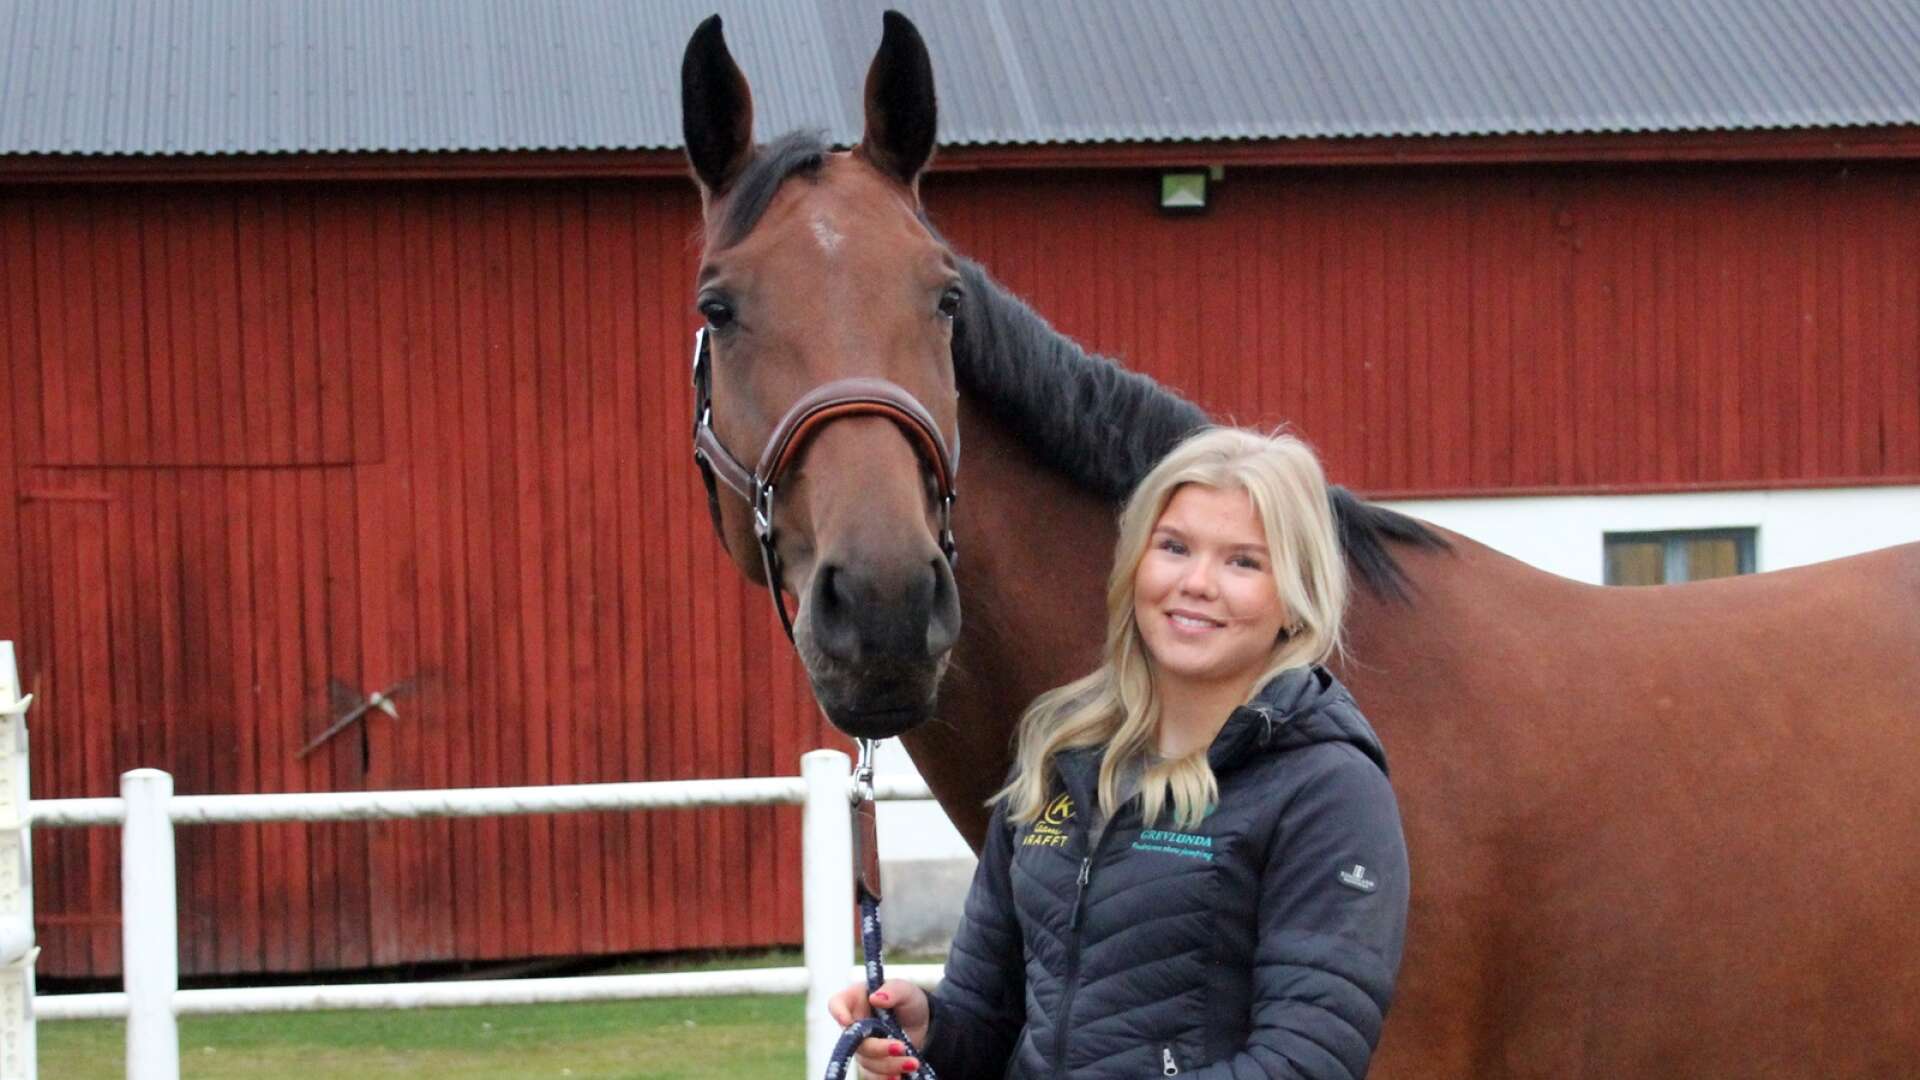 15-åriga Millie Johansson tillsammans med 8-åriga stoet Nova under ett besök tillbaka hemma på gården i Klässbol en ledig helg.